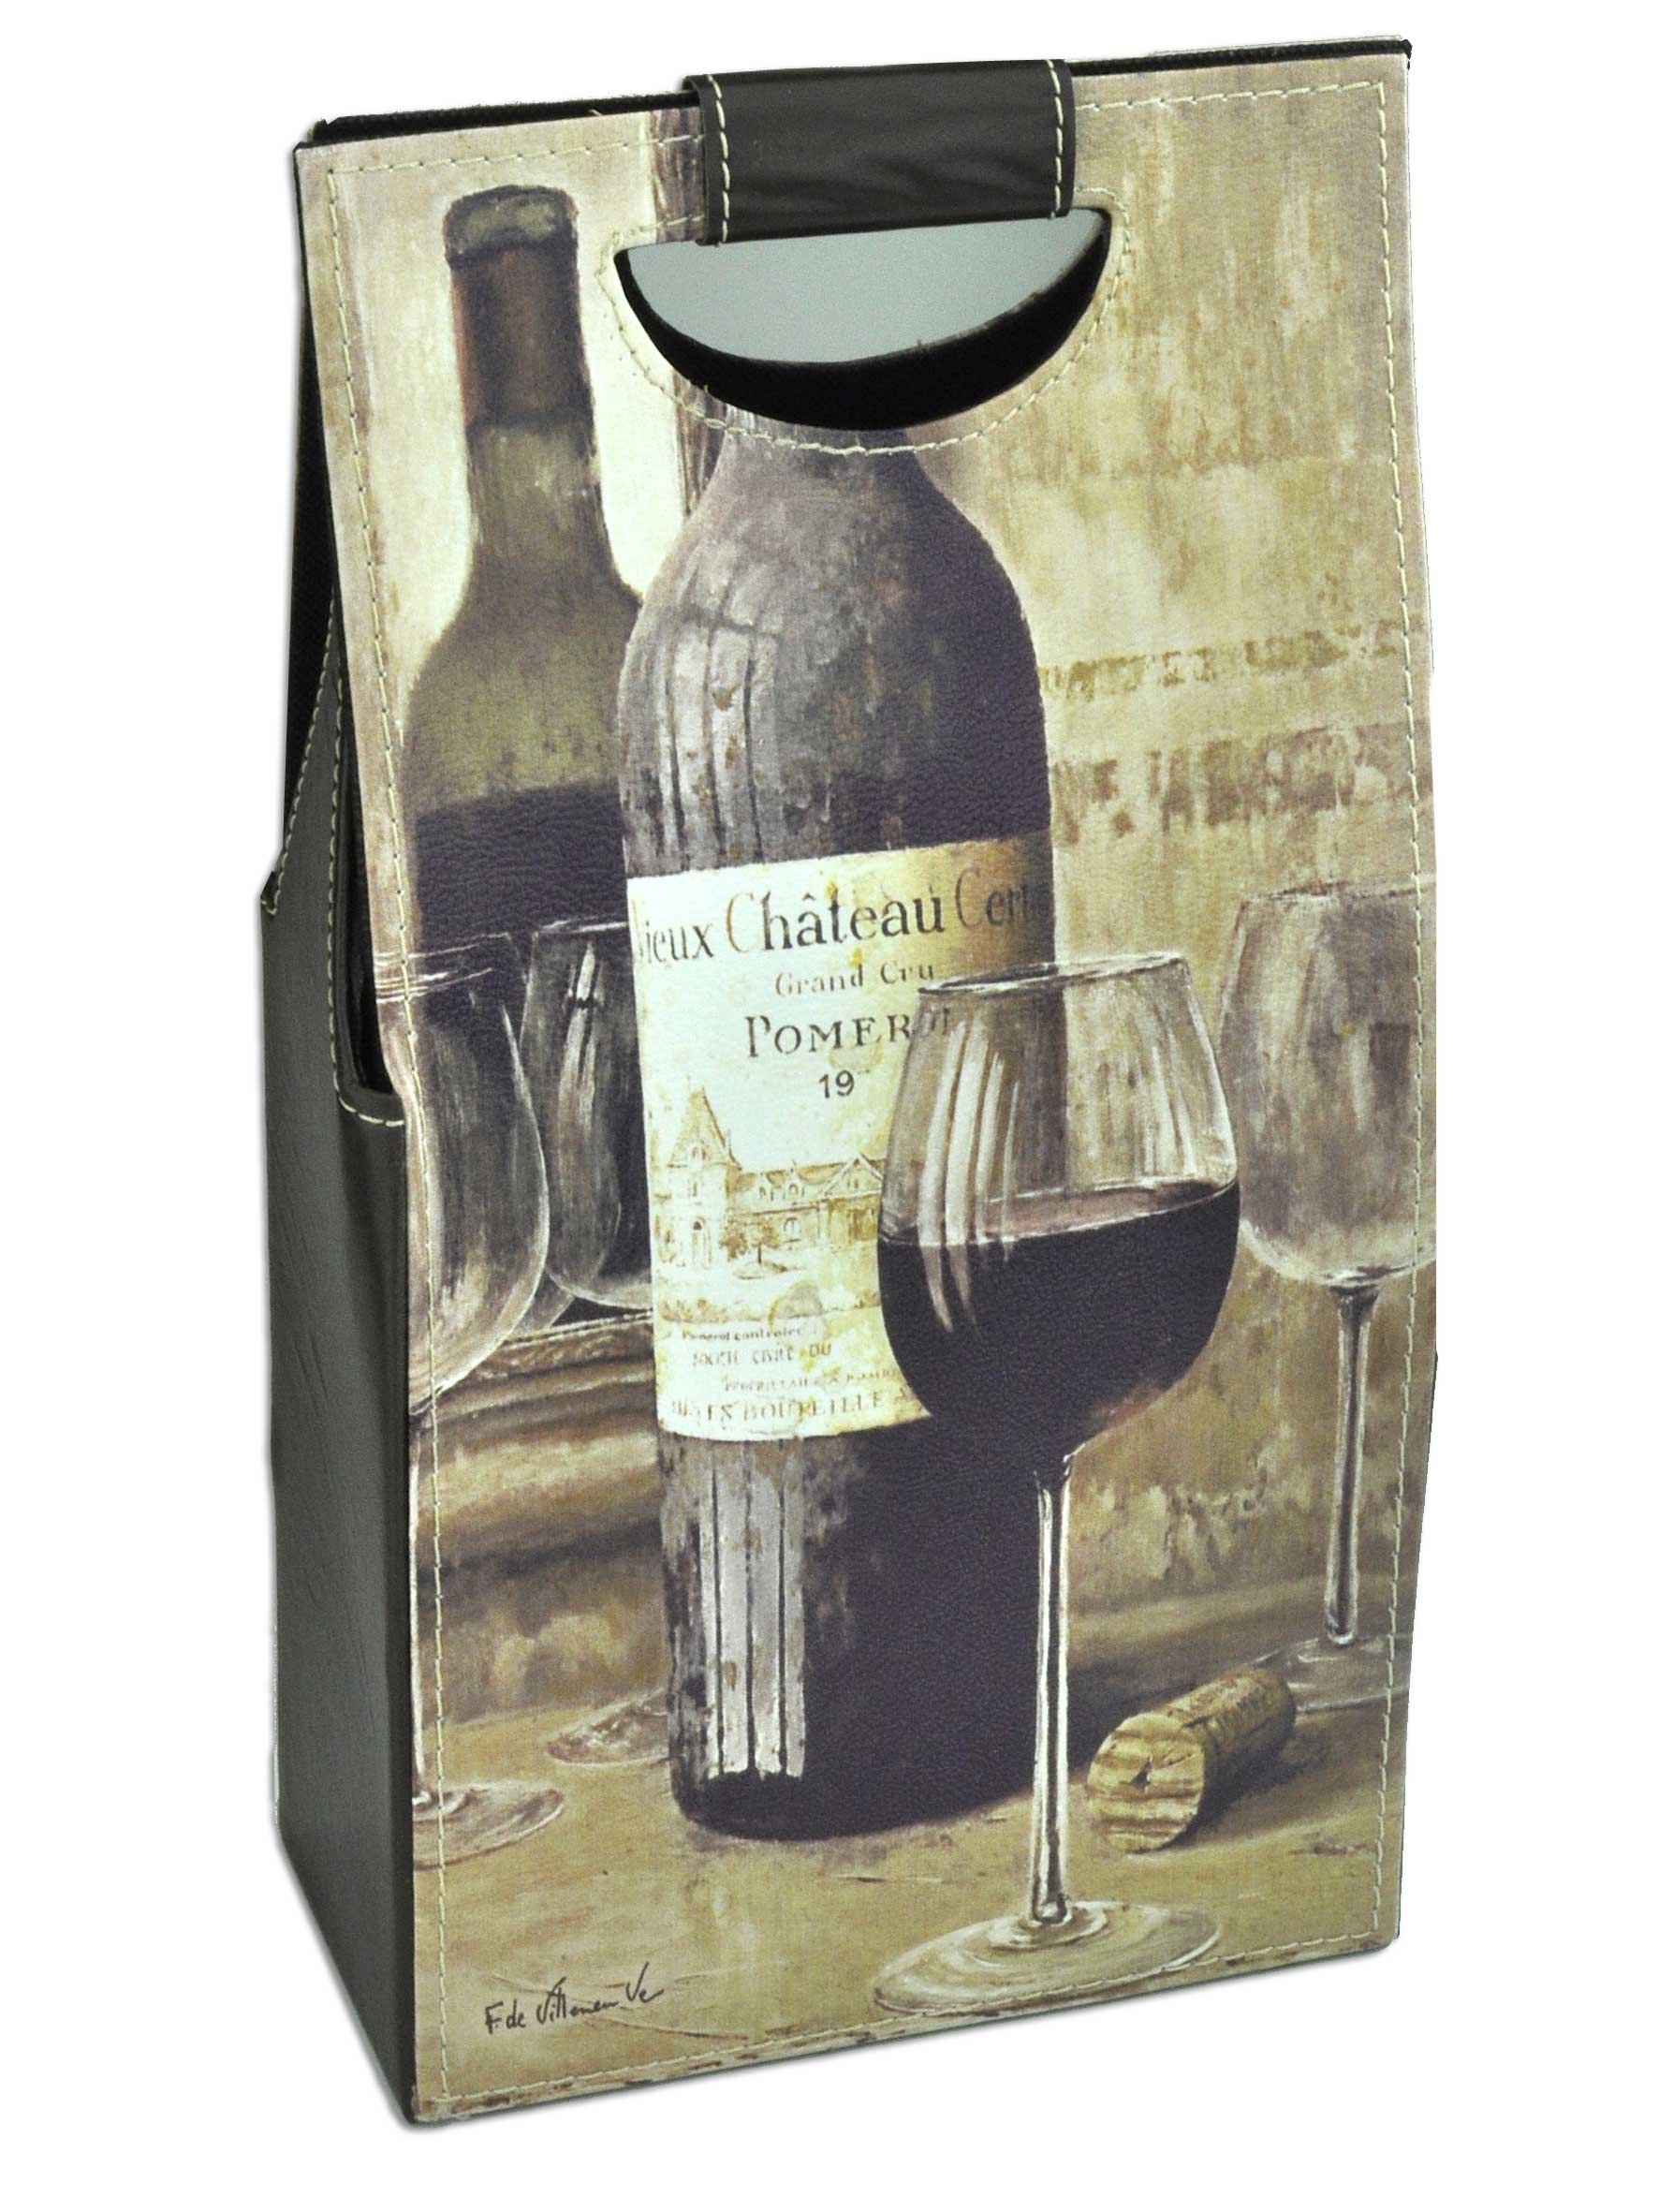 Δερμάτινη μπουκαλοθήκη για δύο μπουκάλια κρασιά με φωτογραφία